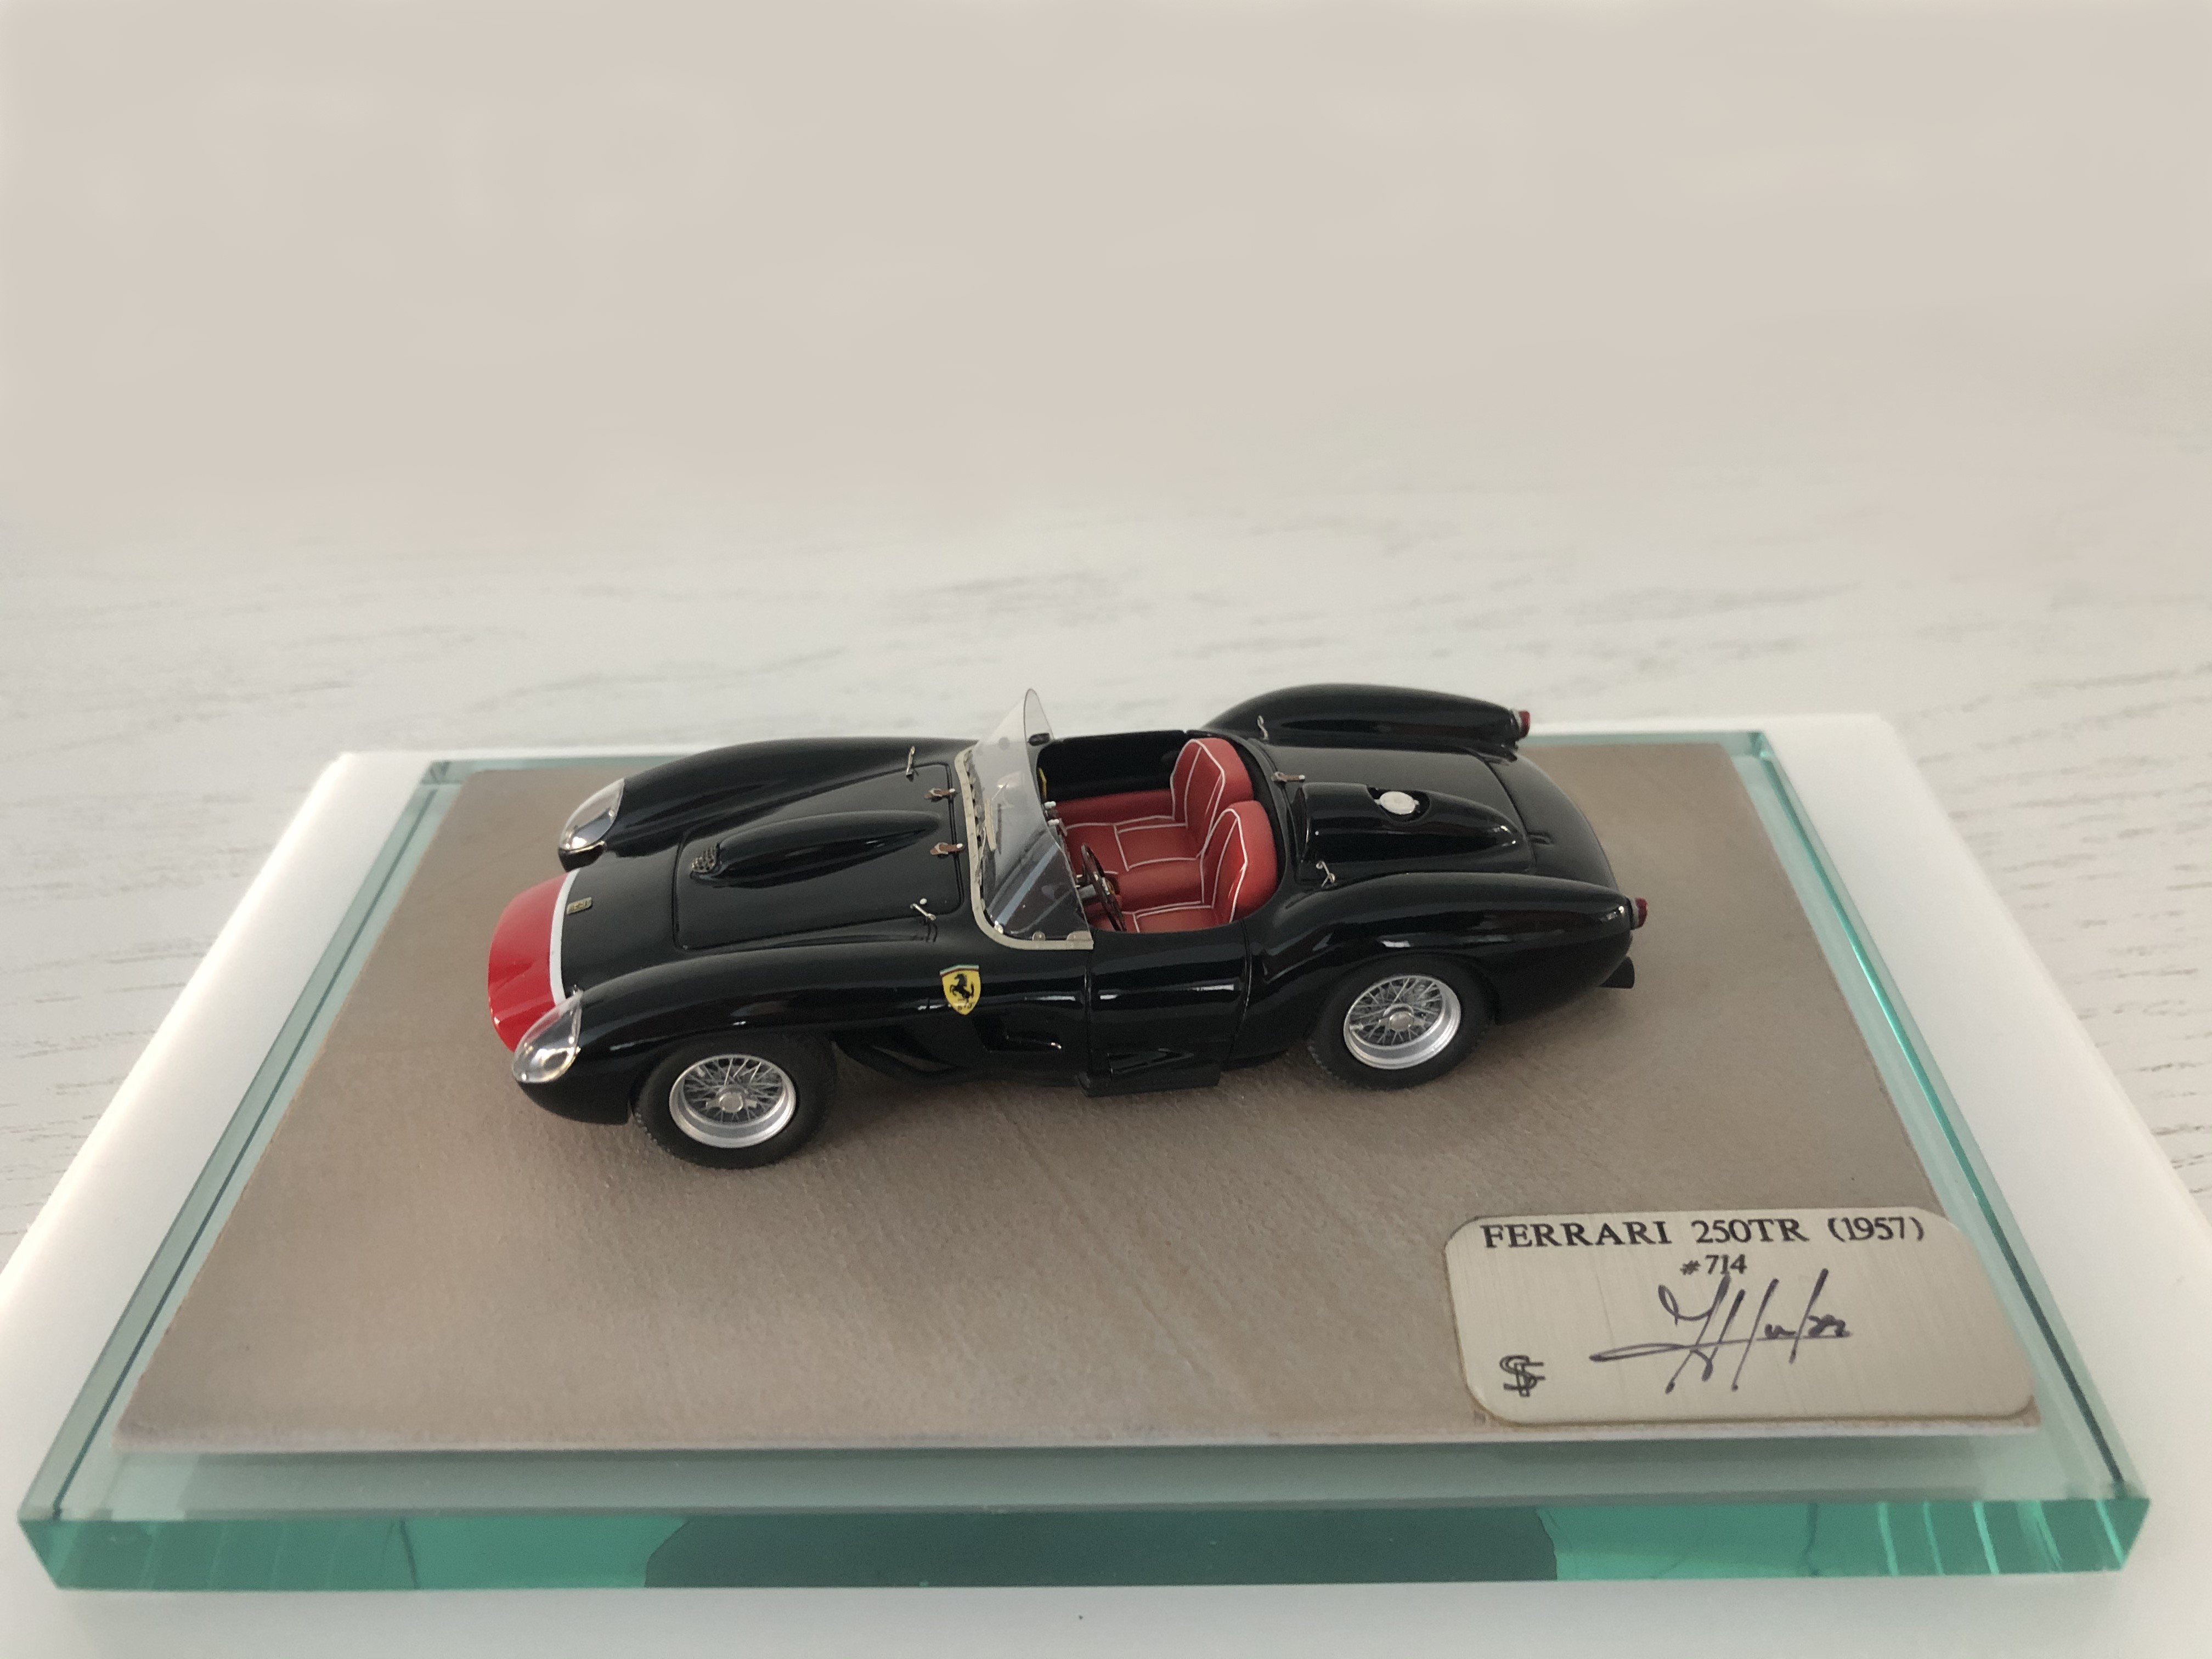 F. Suber : Ferrari 250 TR 1957 chassis 0714 --> SOLD